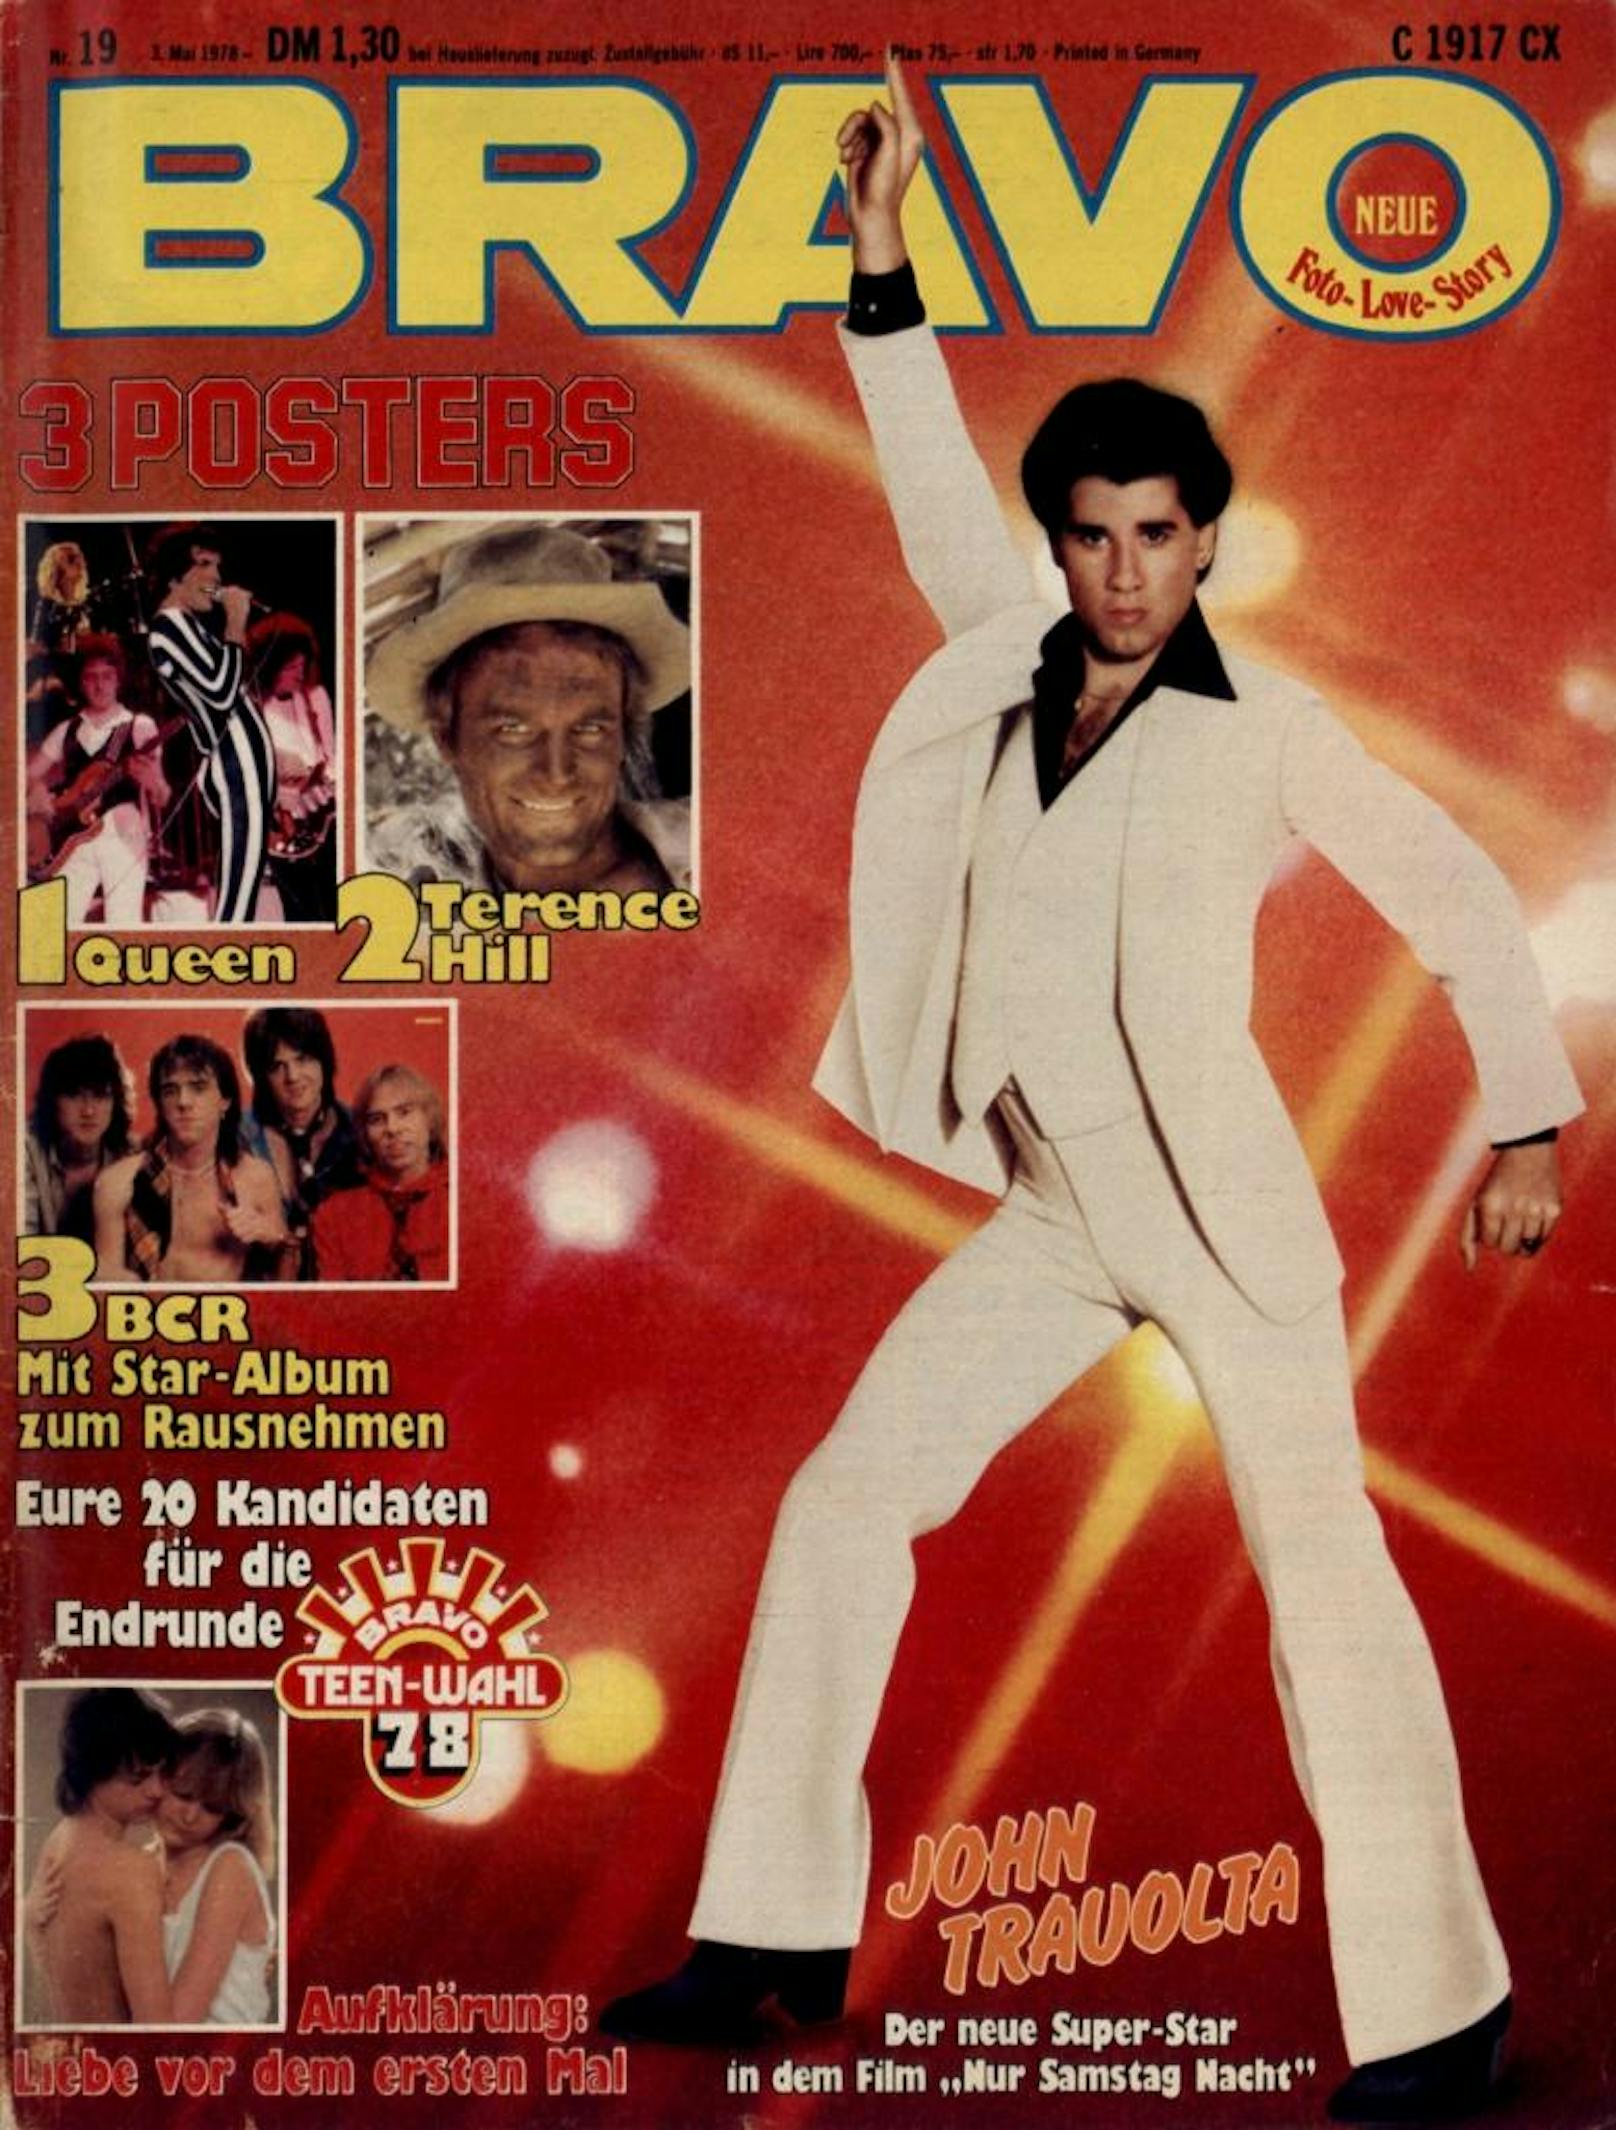 Saturday Night Fever: John Travolta ist DER neue Superstar, die Disko-Musik kommt von den Bee Gees.